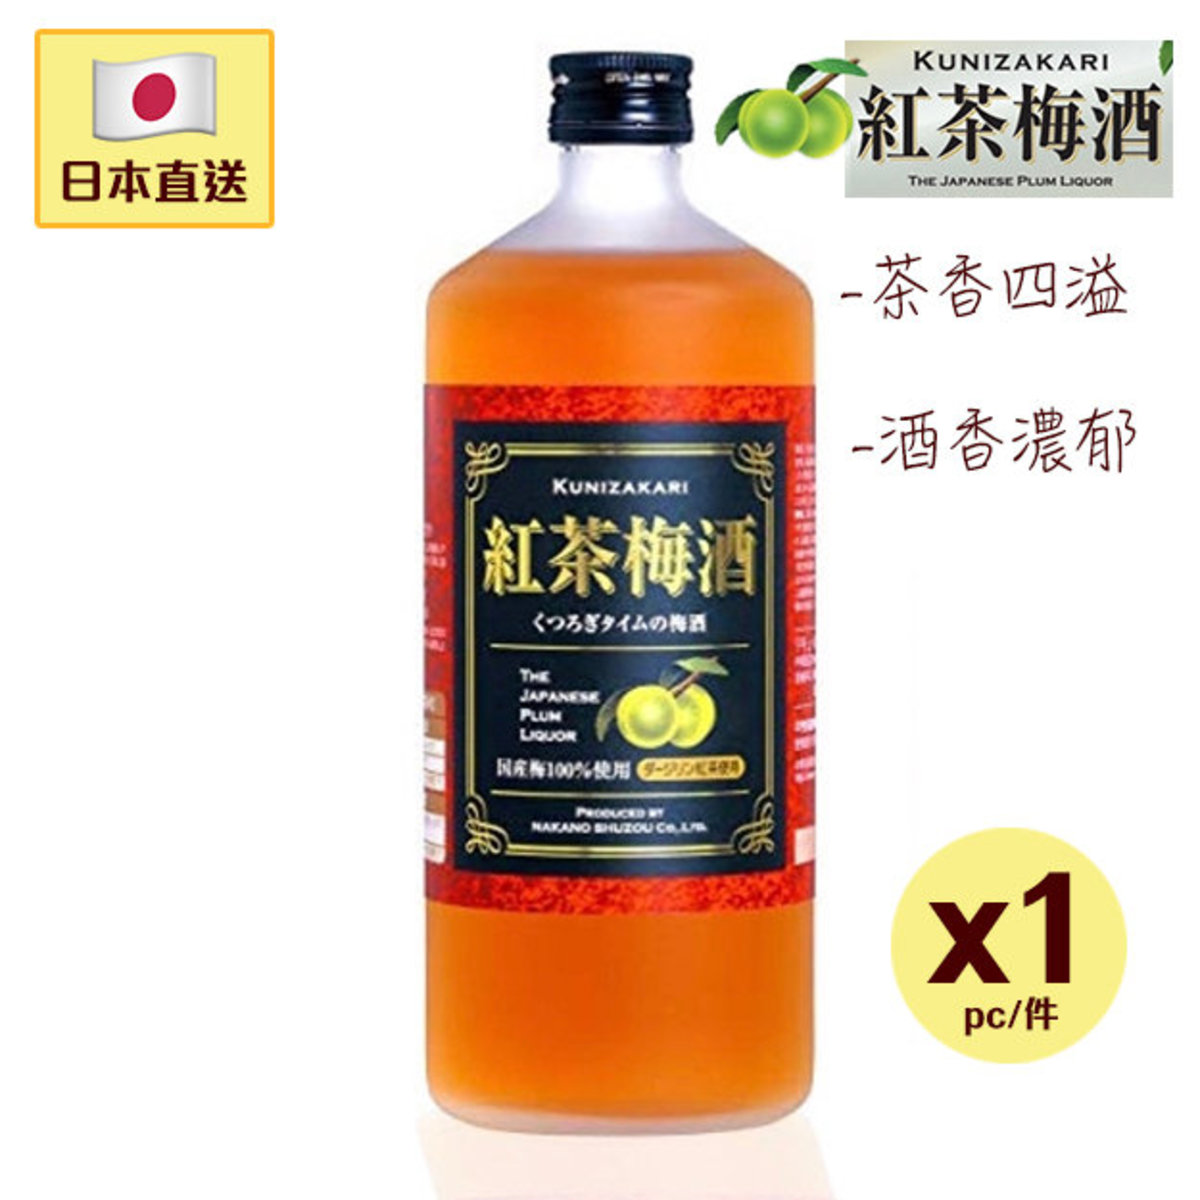 Japanese Kunizakari Black Tea Plum Wine 720ml (1 pc) NAKANO Nakano Sake Brewing/日本Kunizakari紅茶梅酒 720ml (1件) 